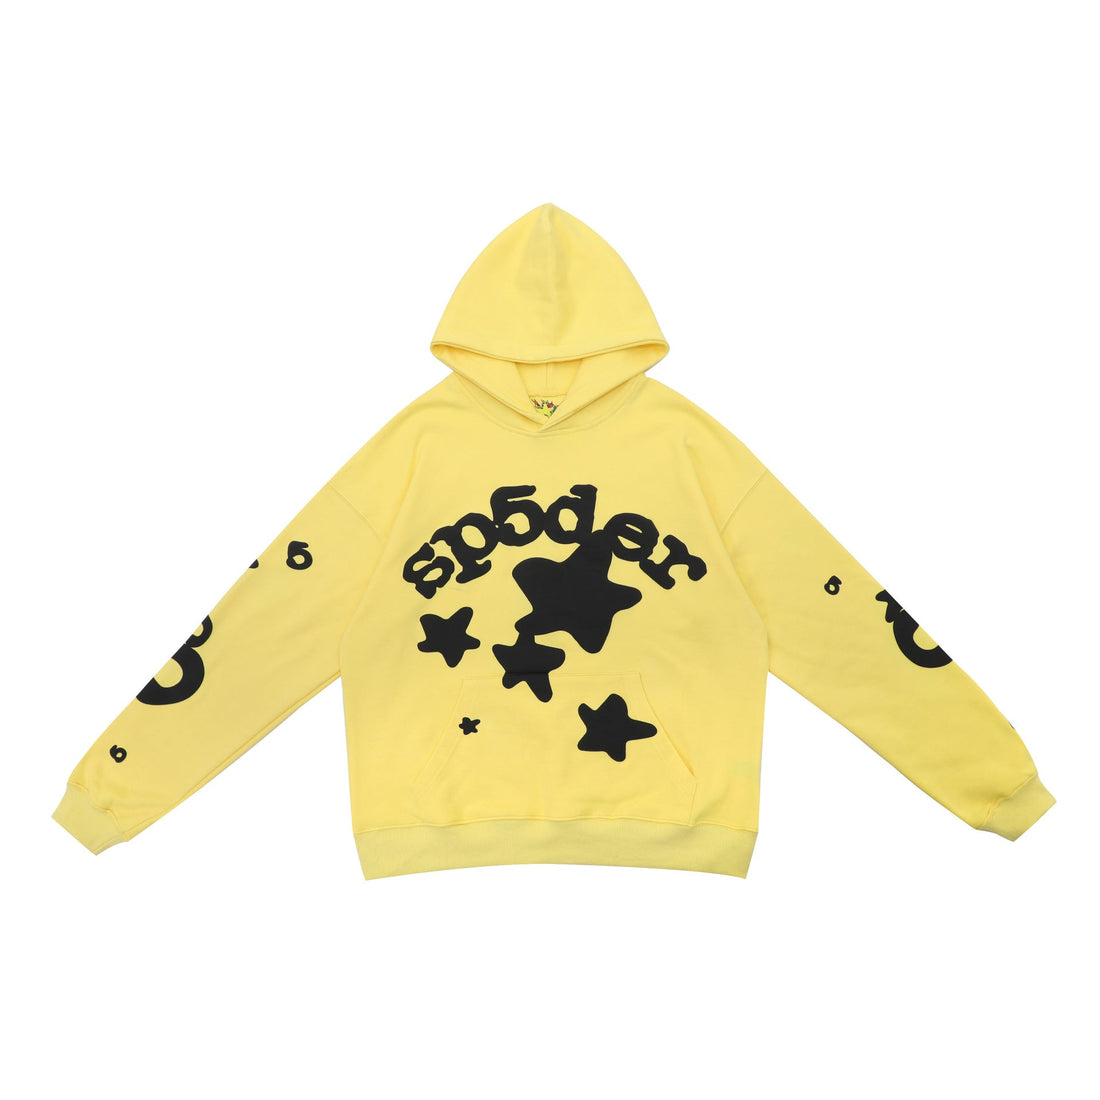 Cheerful Yellow Sp5der Hoodie - Trendy Star Print Hooded Sweatshirt - Seakoff